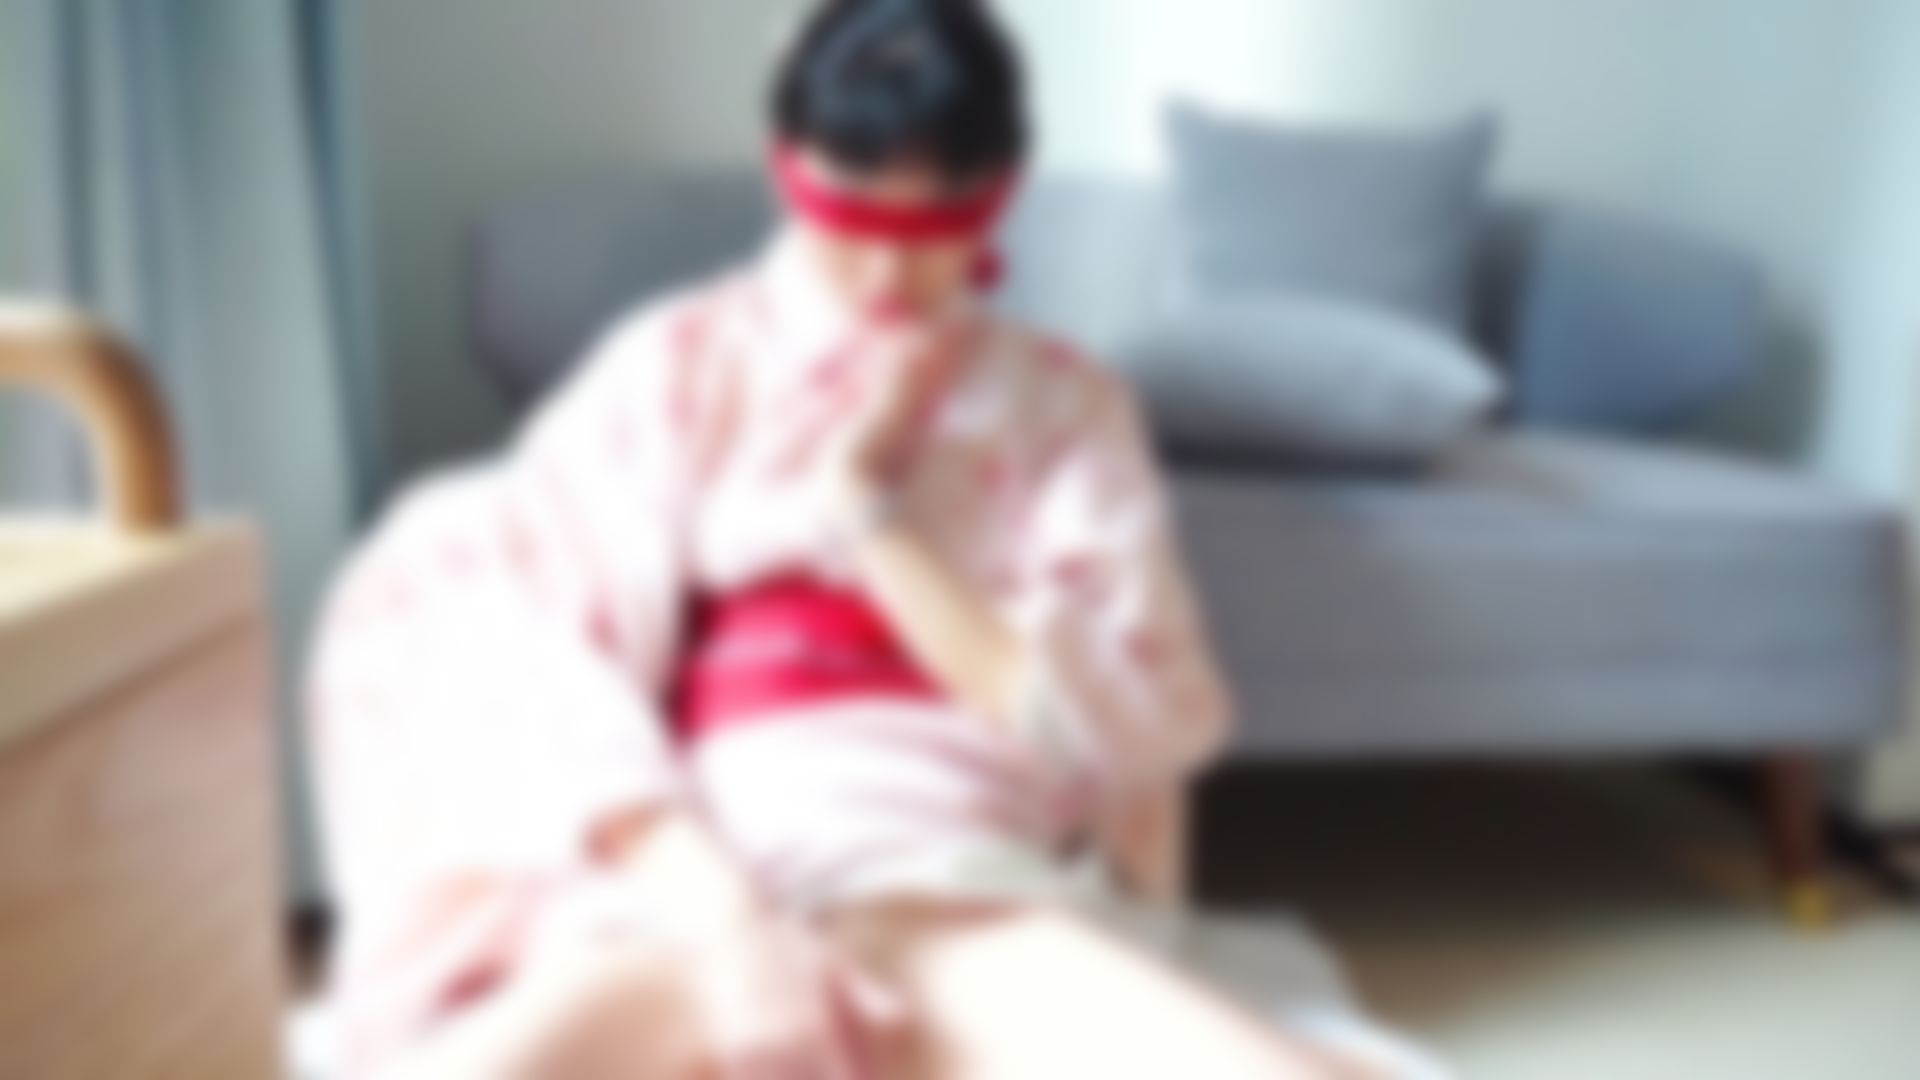  : I AM Neko-Kimono girl 穿和服在旅館慰慰/吃棒棒 玩得超級爽 水和白漿一起流